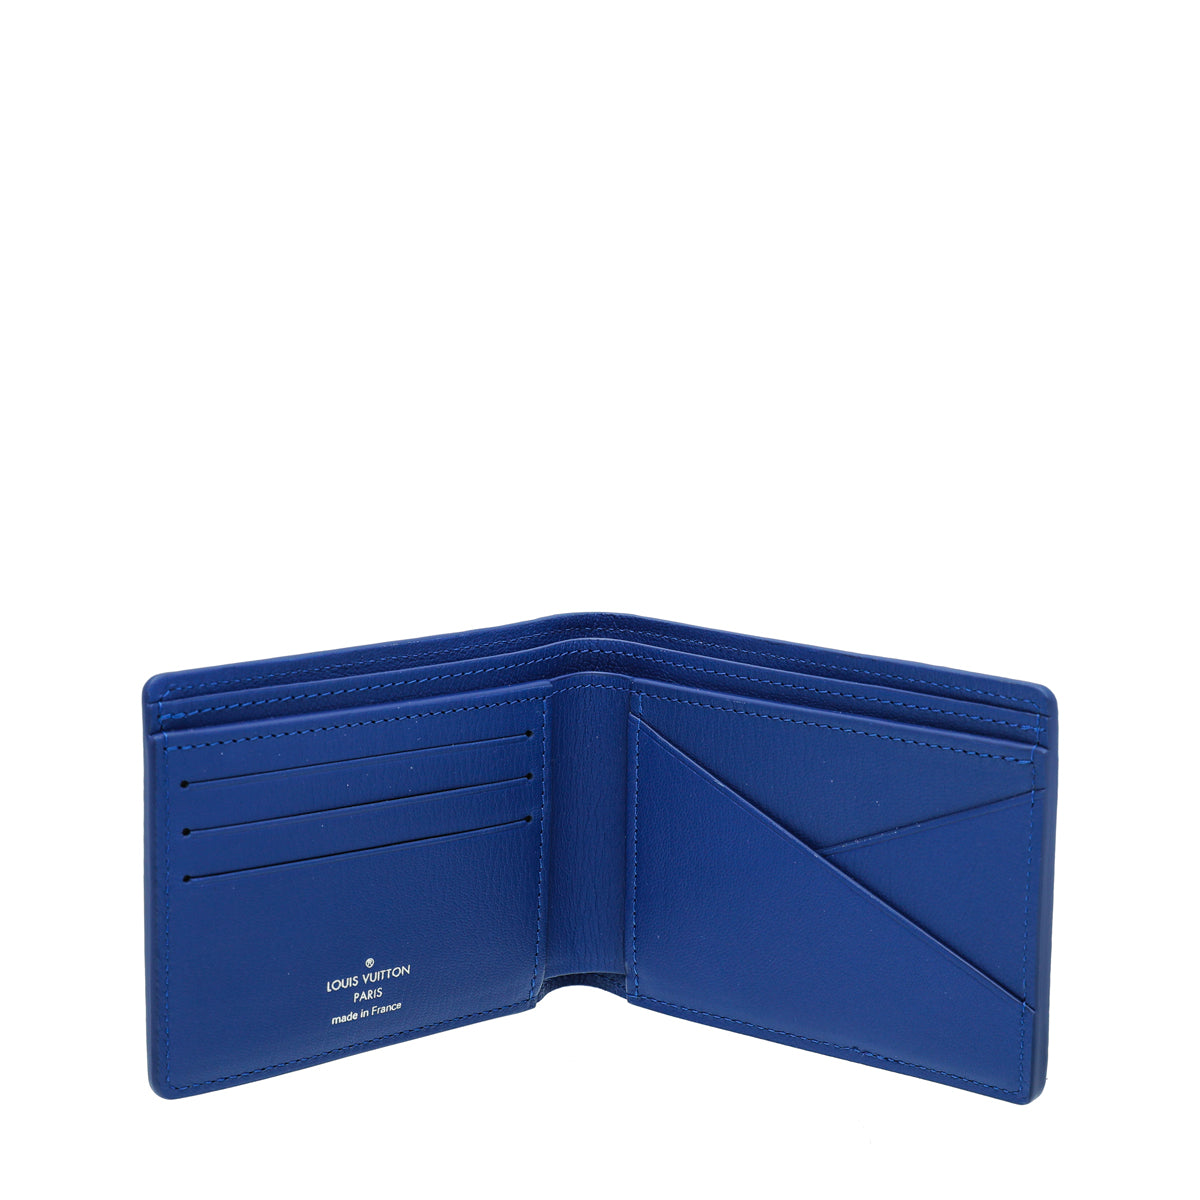 Auth Louis Vuitton Portefeuille COMETE Long Wallet Blue Marine M68582 -  r8838a